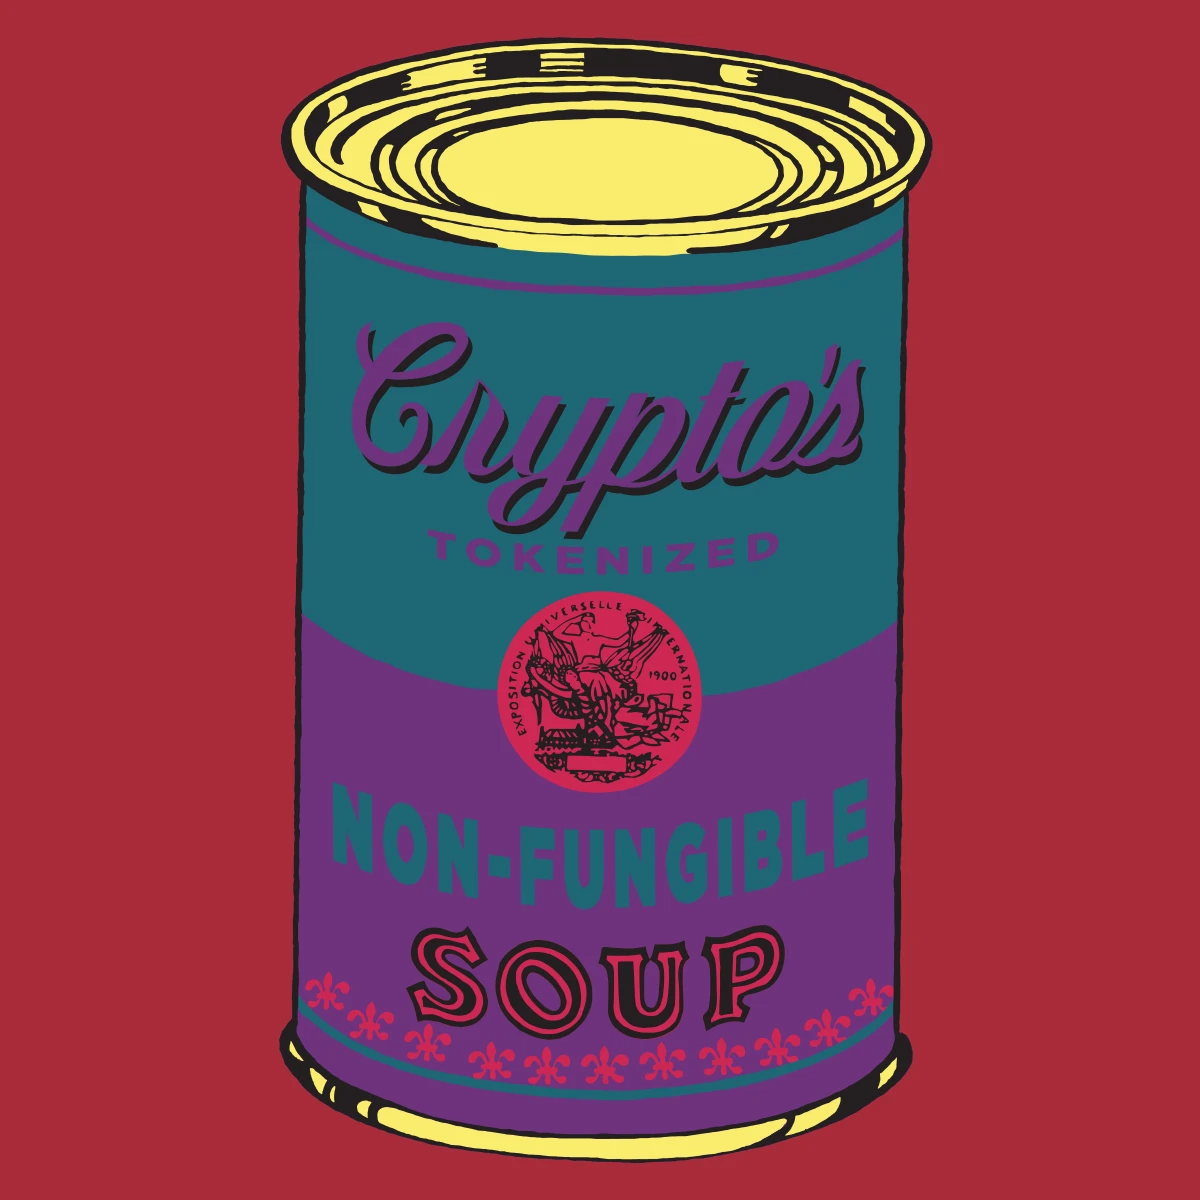 Non-Fungible Soup #0095